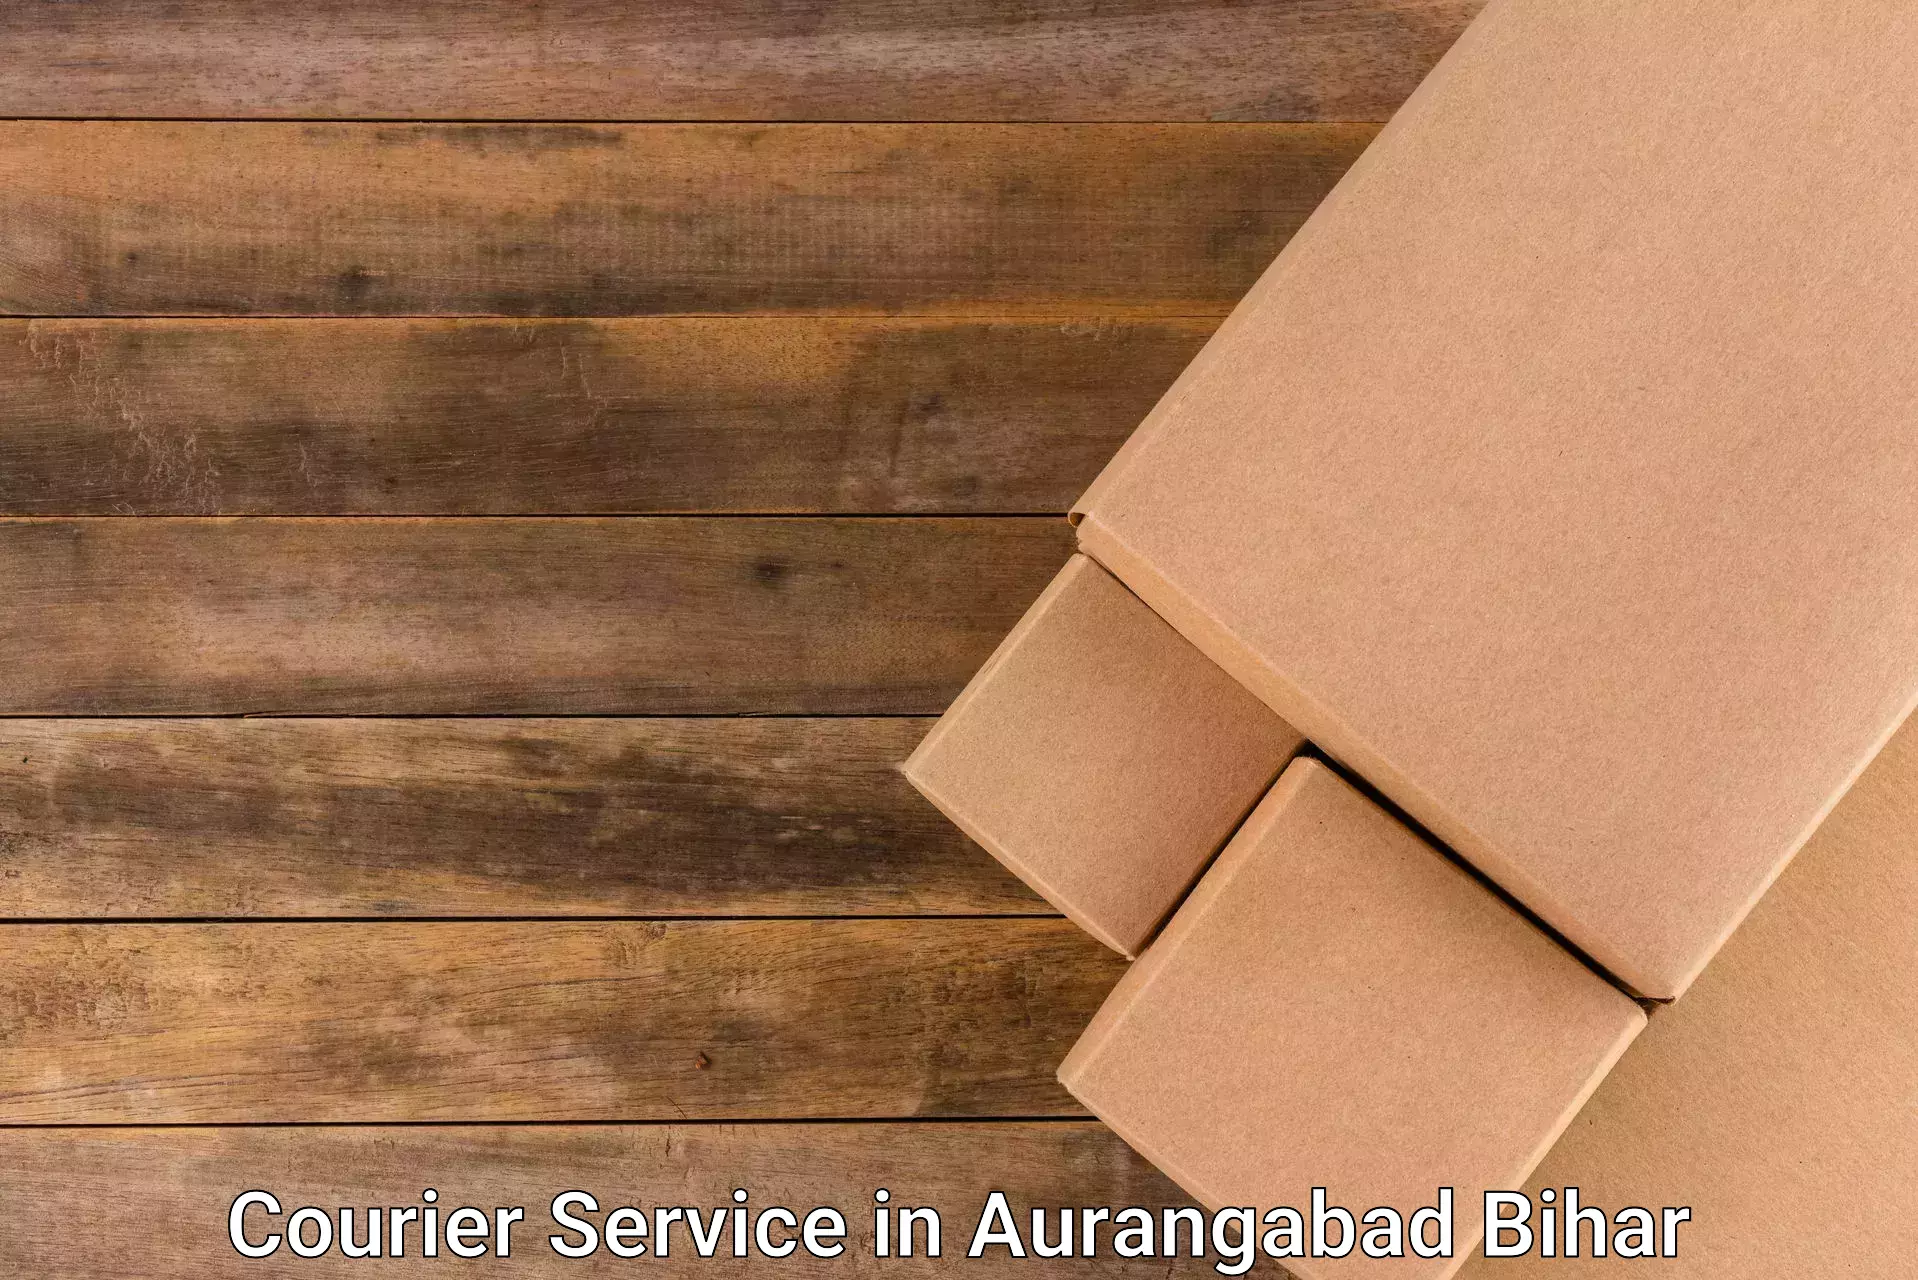 Medical delivery services in Aurangabad Bihar